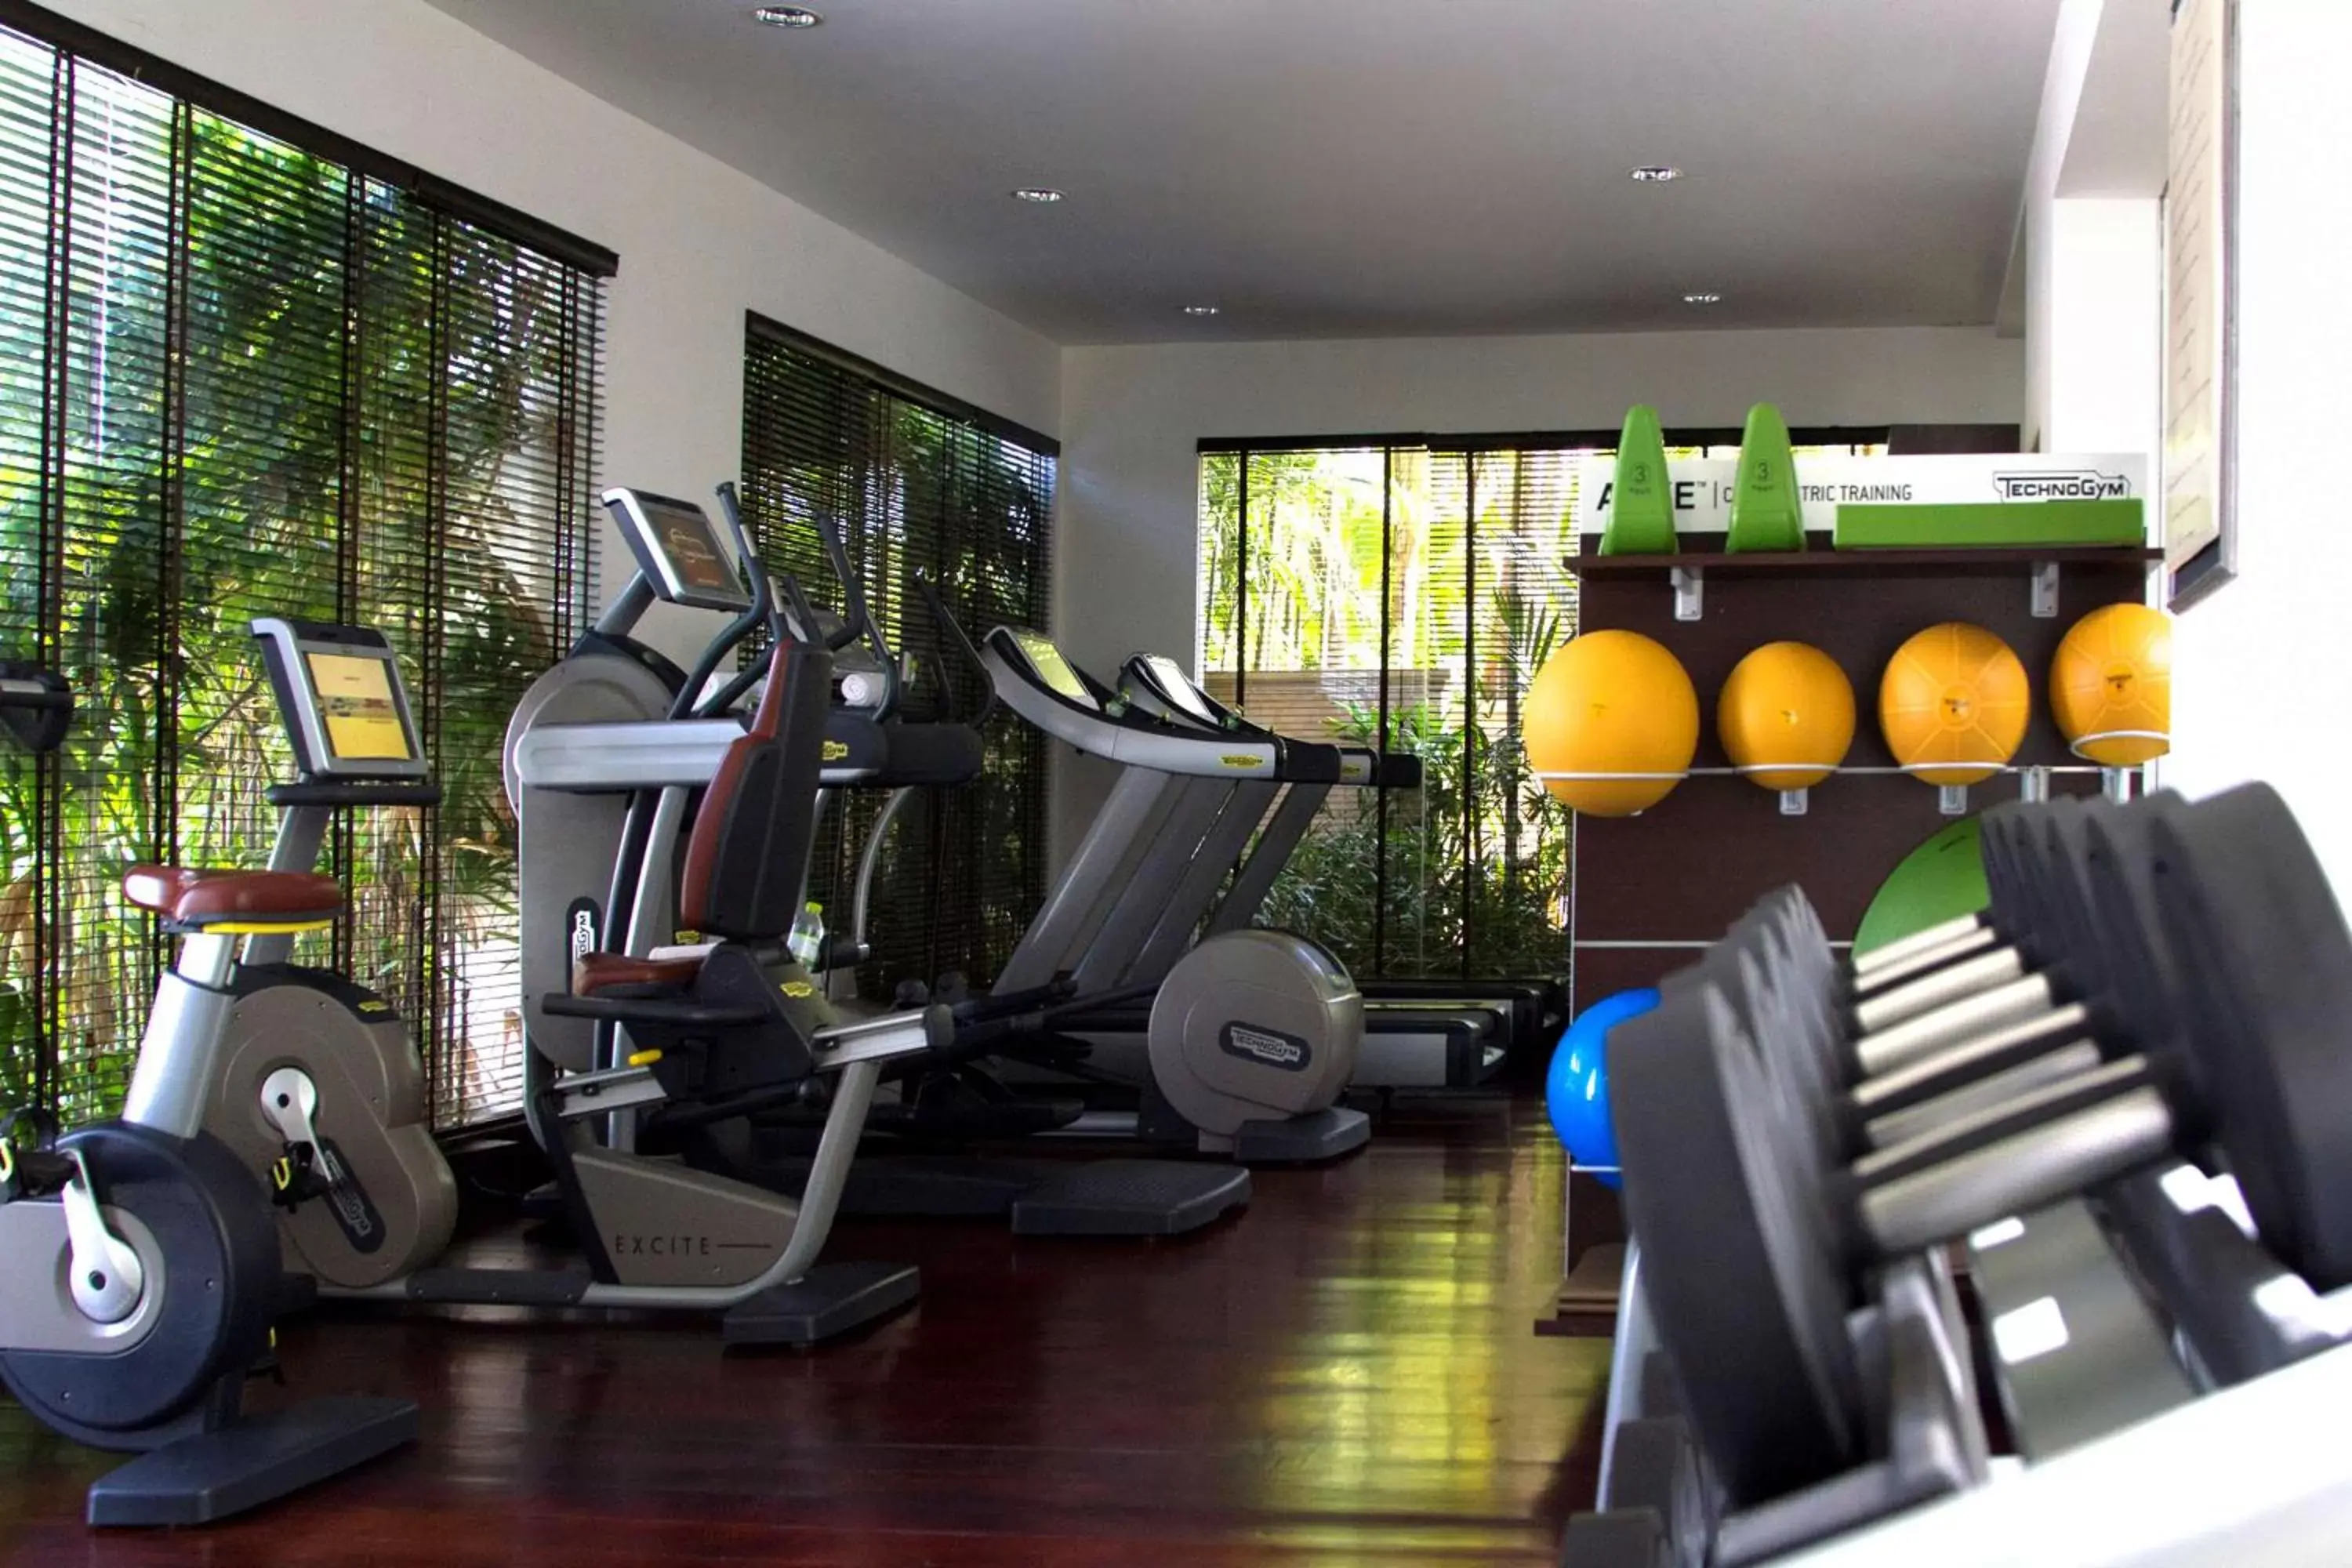 Fitness centre/facilities, Fitness Center/Facilities in Park Hyatt Siem Reap